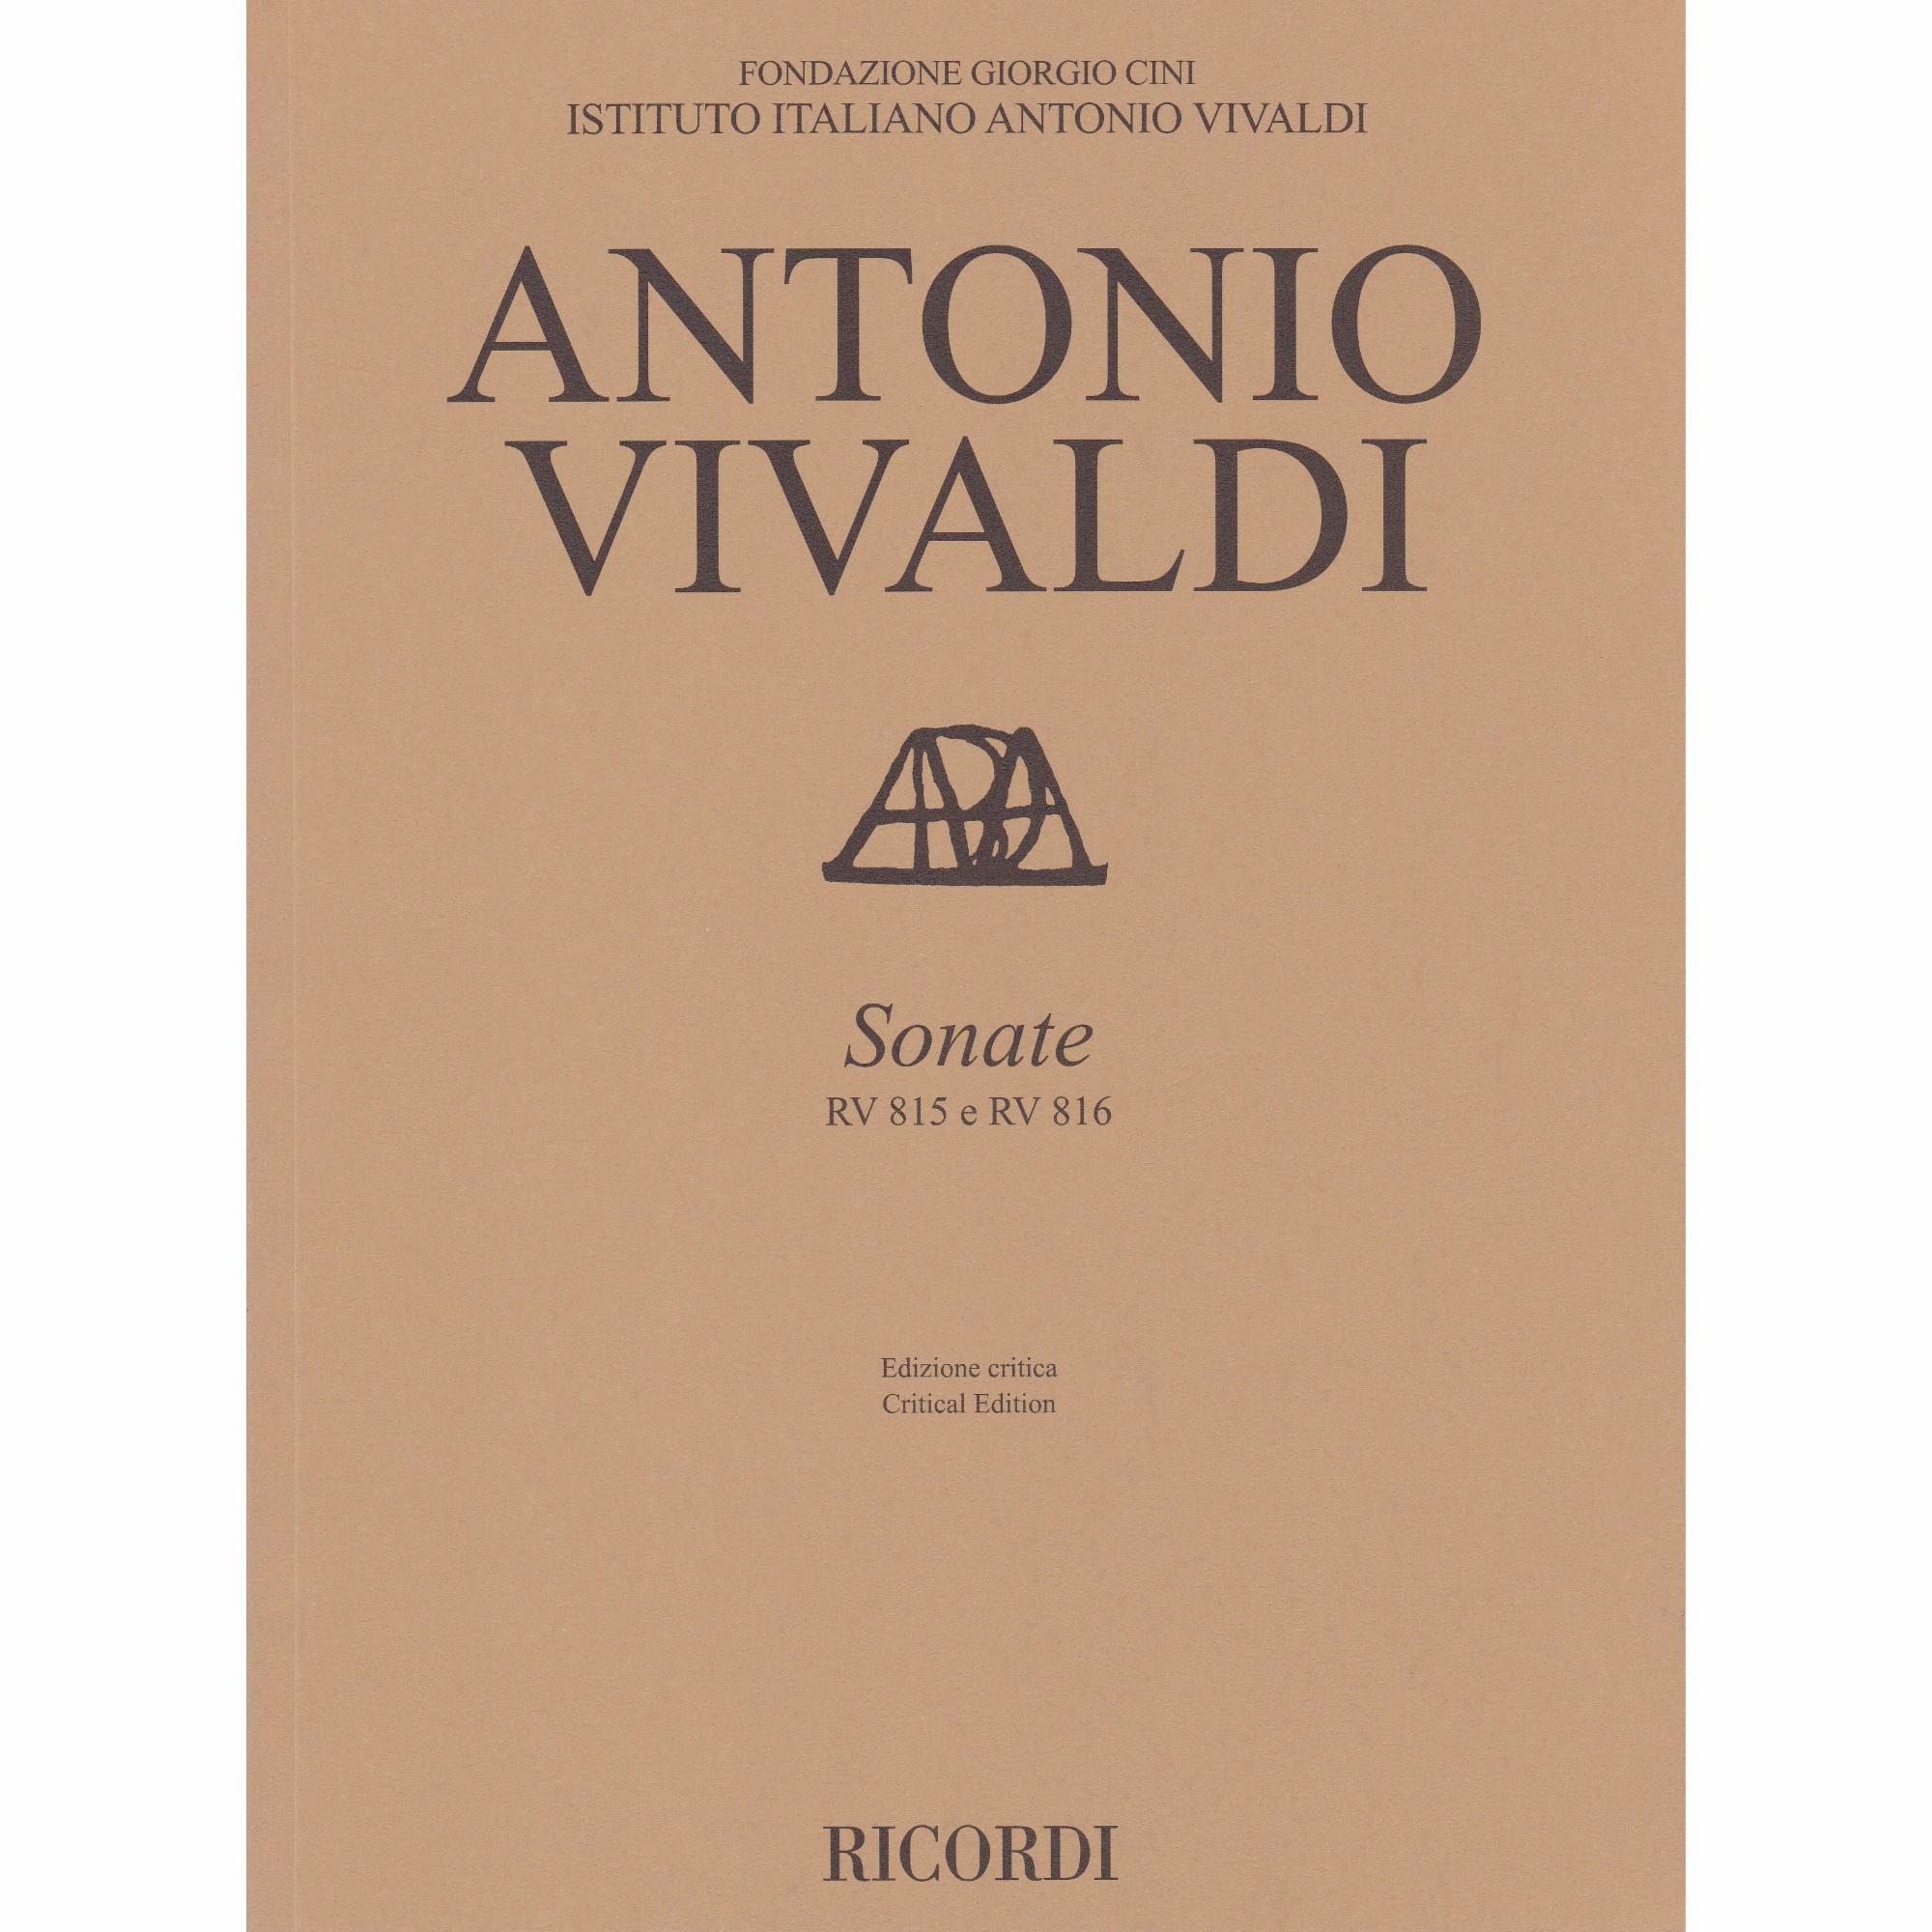 Two Violin Sonatas, RV 815 and RV 816